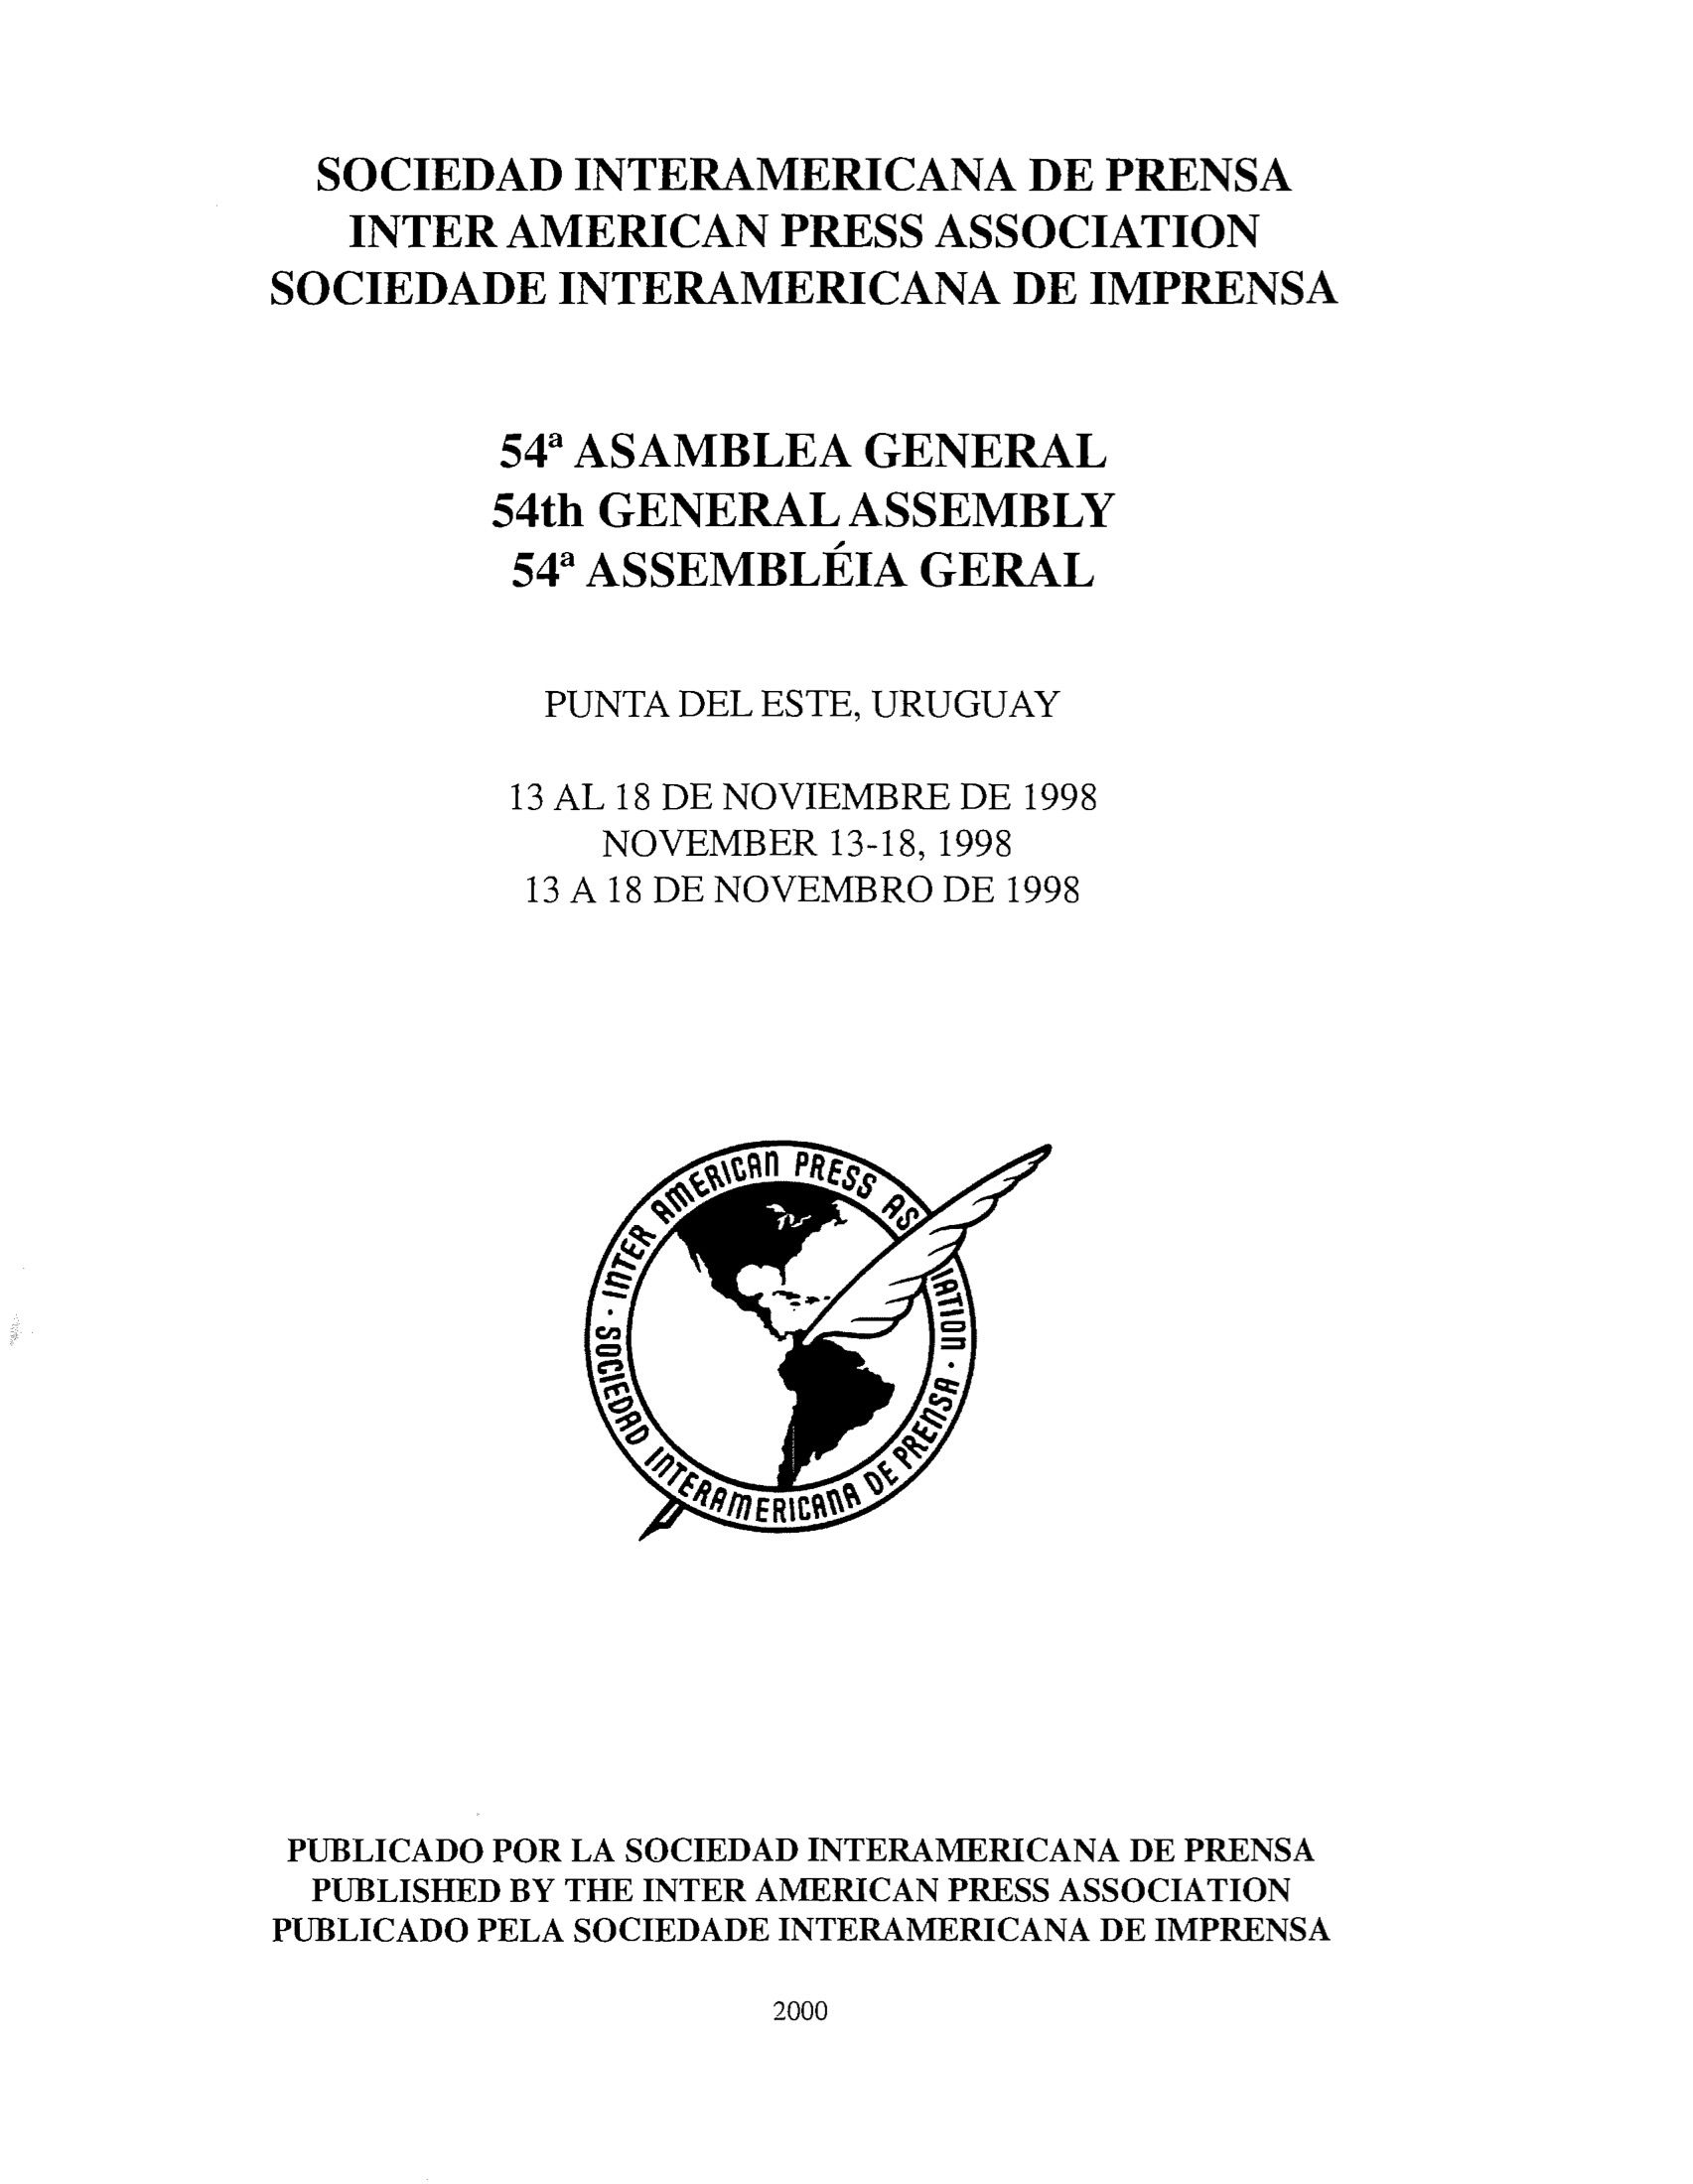 54a Asamblea General. Punta del Este, Uruaguay 1998.